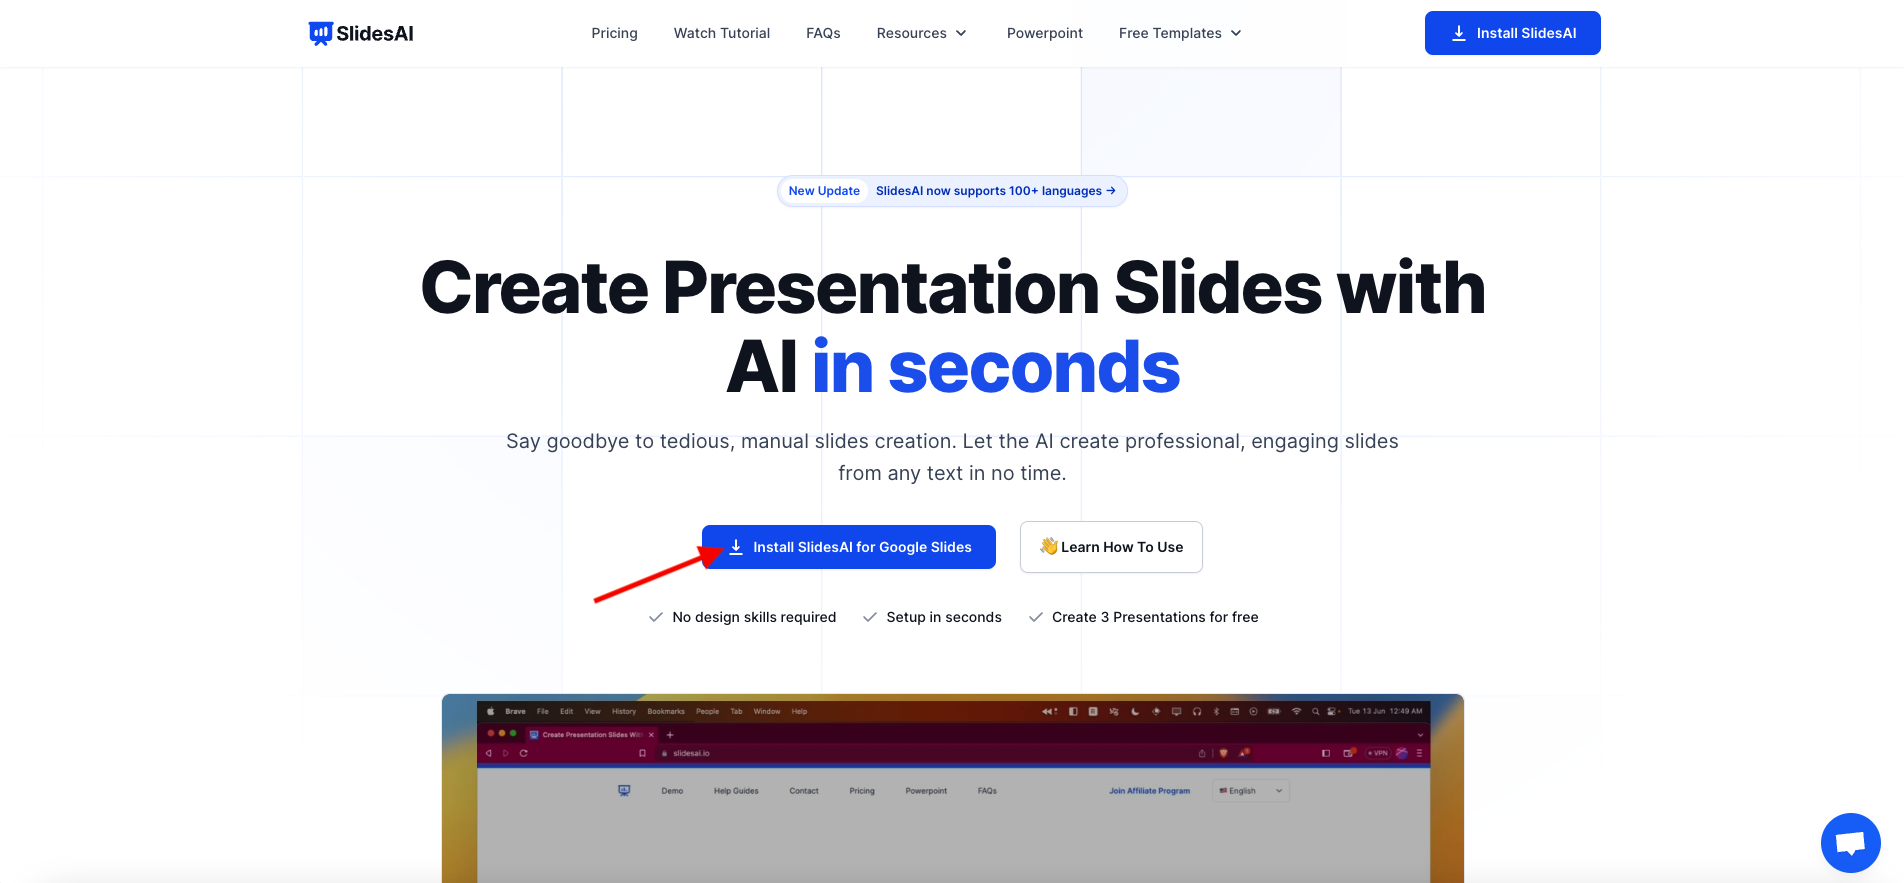 Install SlidesAI for Google Slides